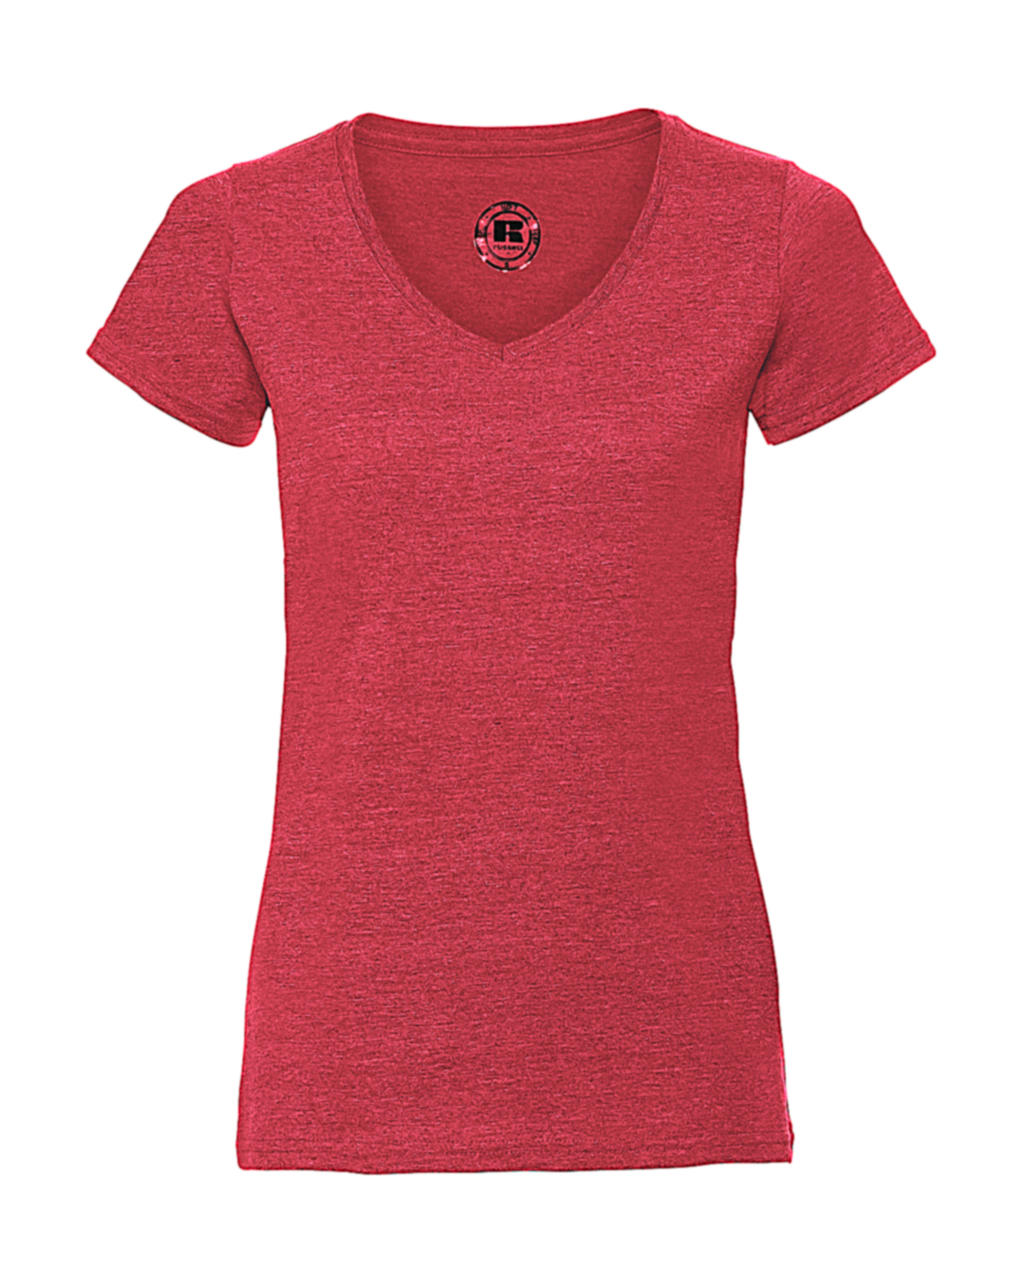 Dámske tričko HD s V-výstrihom - red marl